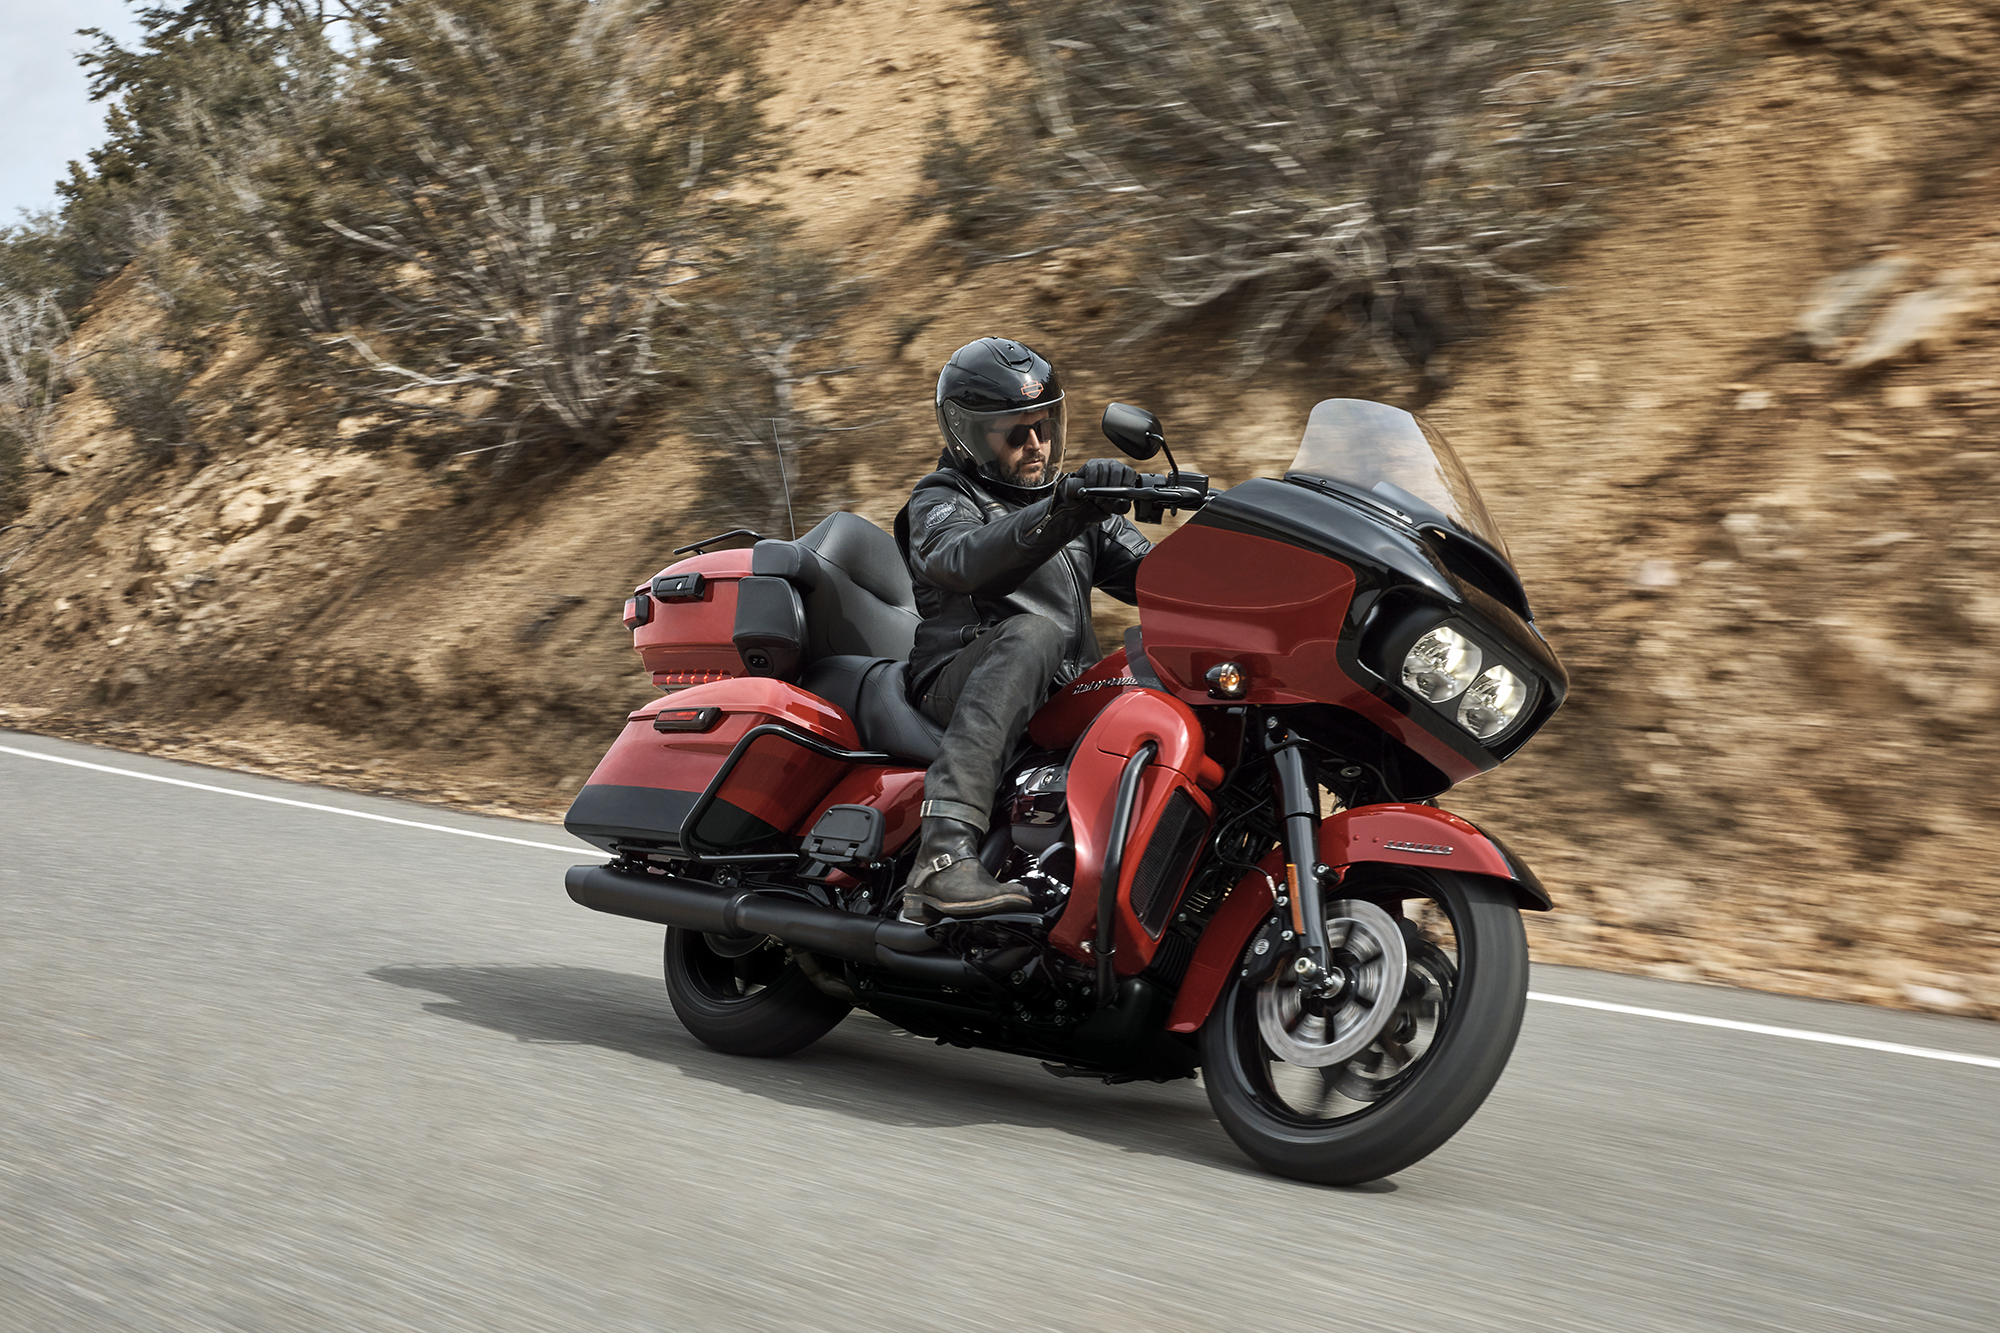 Harley-Davidson do Brasil explica tecnologias presentes no sistema Reflex™ Defensive Rider System (RDRS) em vídeo